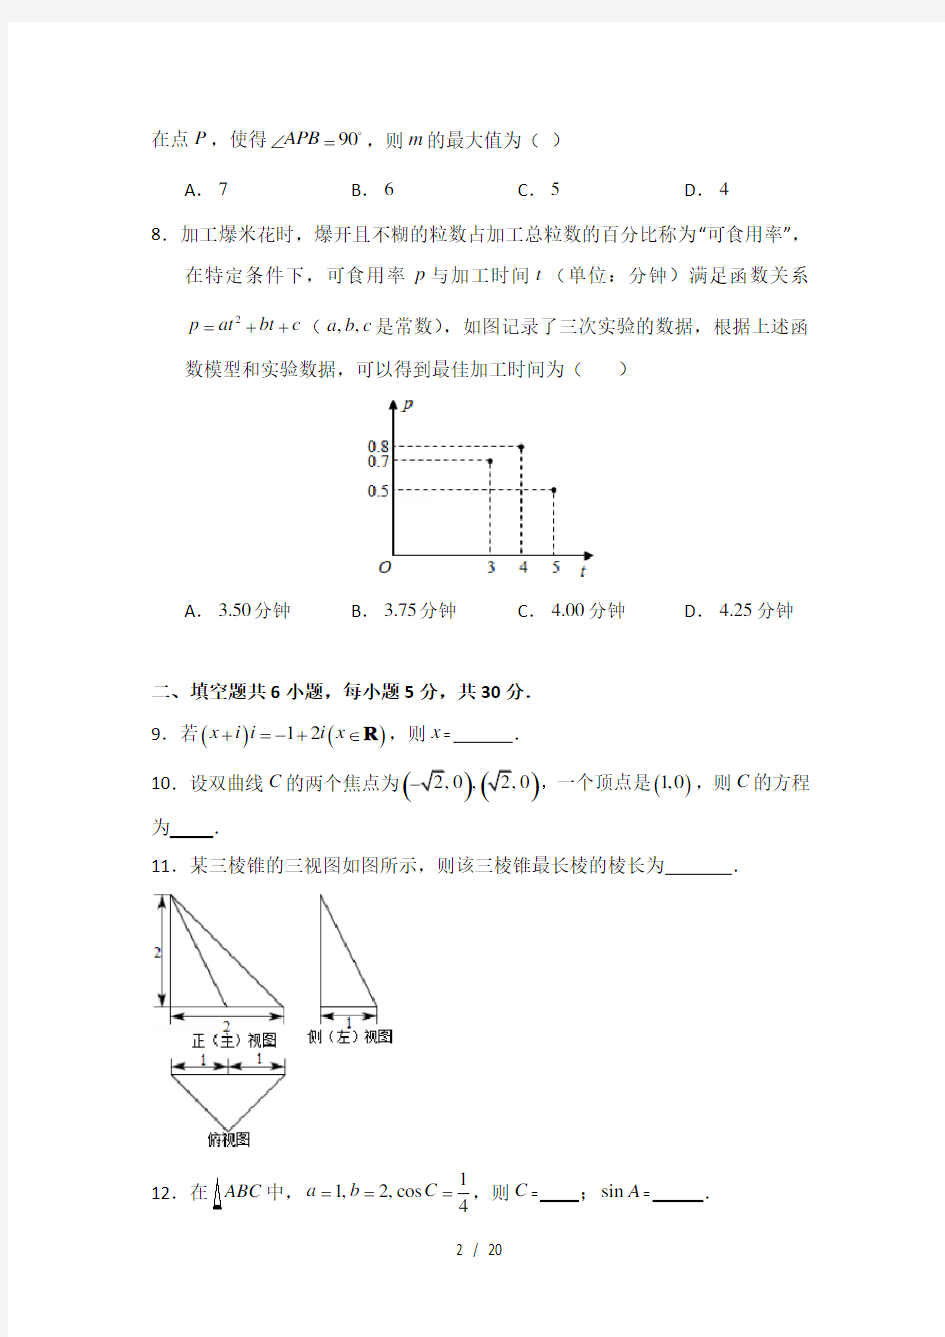 2014年北京市高考数学试卷文科